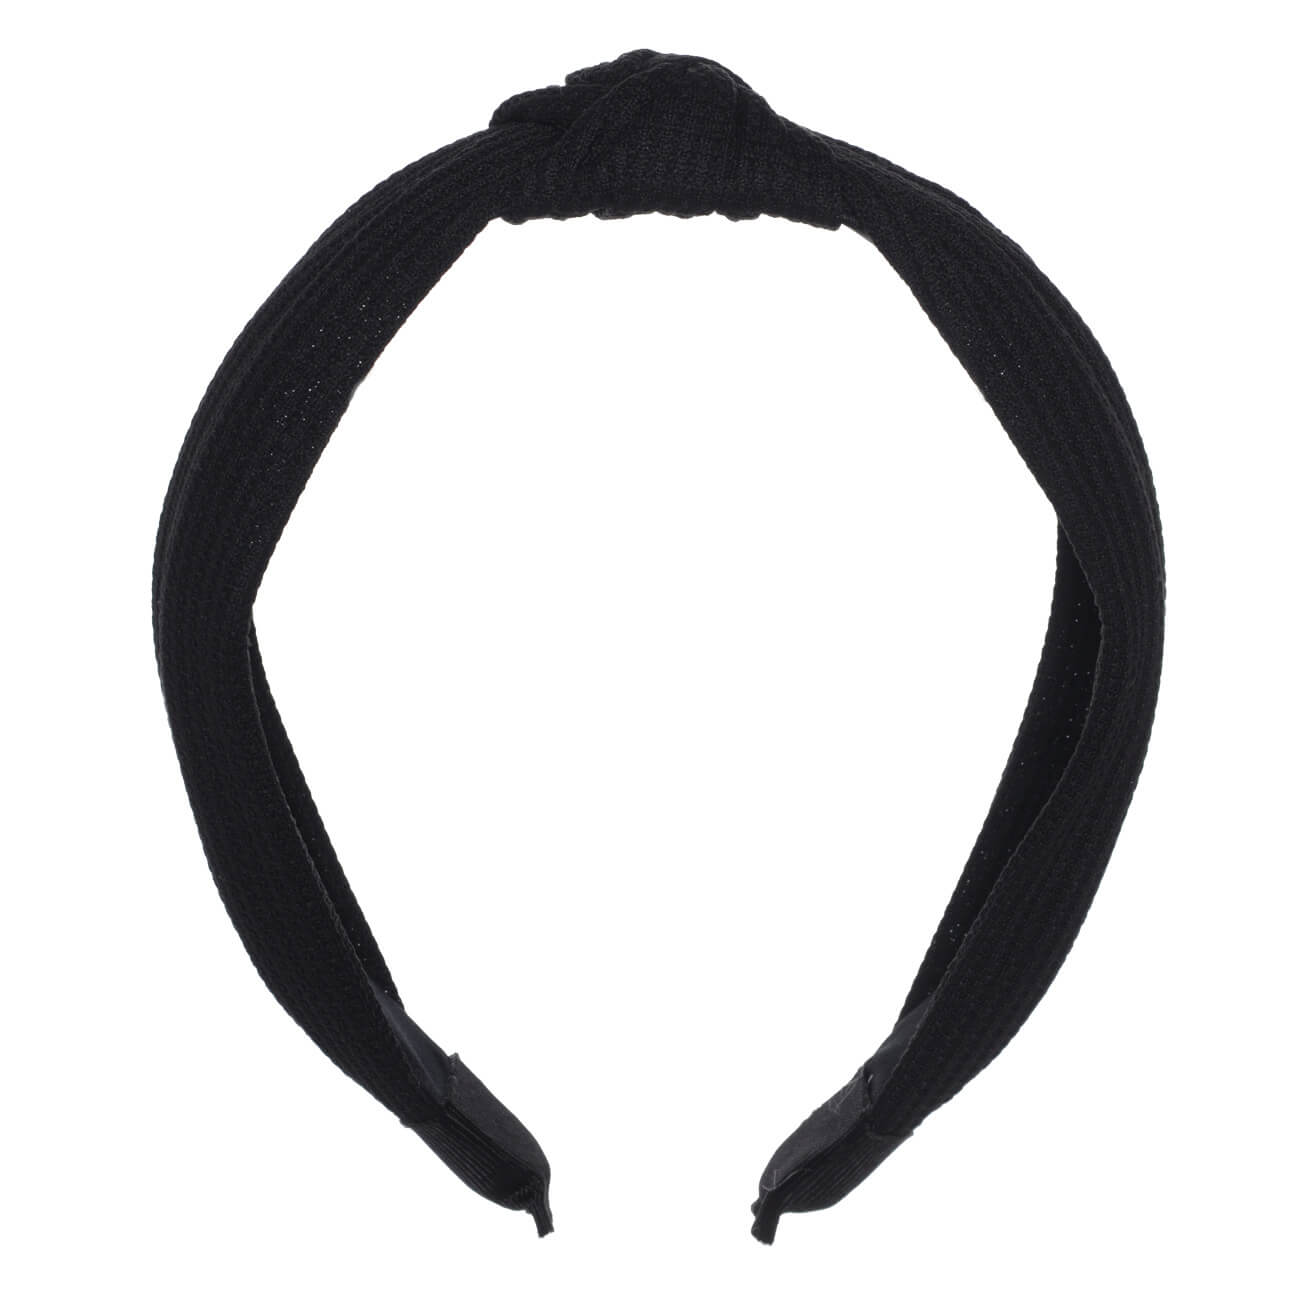 Ободок для волос, 13х15 см, полиэстер/пластик, черный, Basic изображение № 1